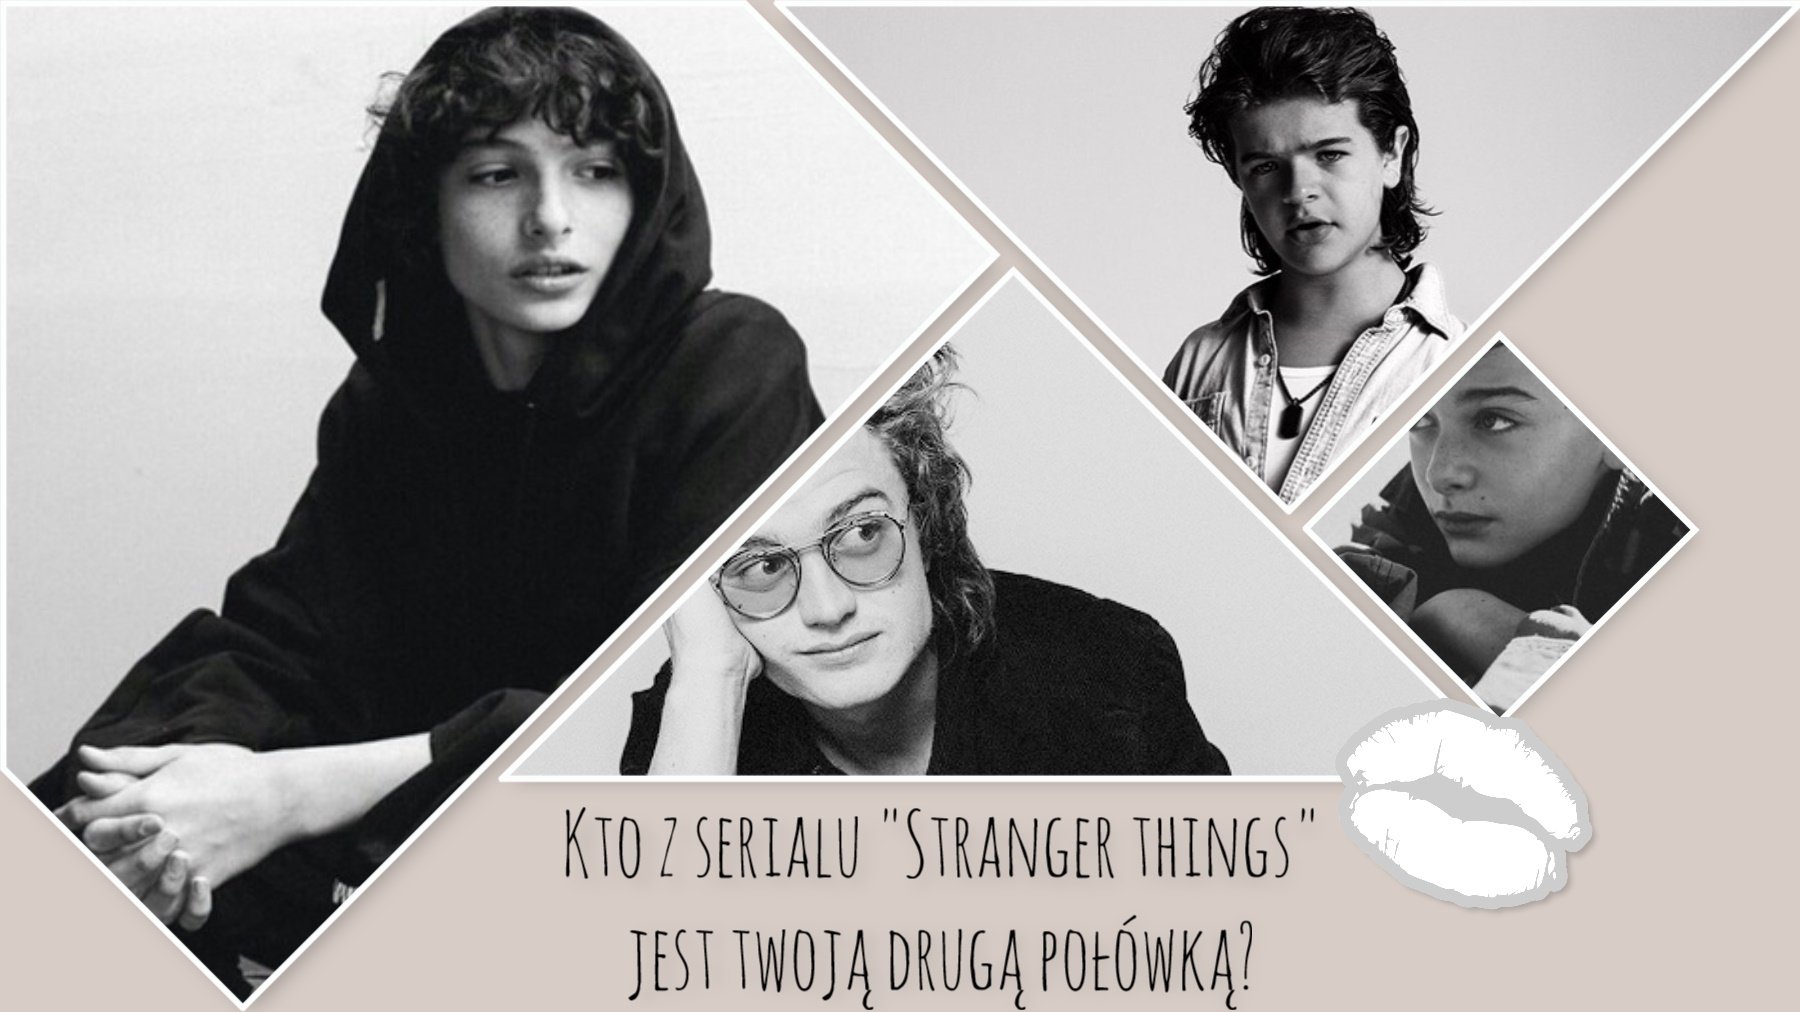 Który chłopak z serialu „Stranger Things” jest Twoją drugą połówką?